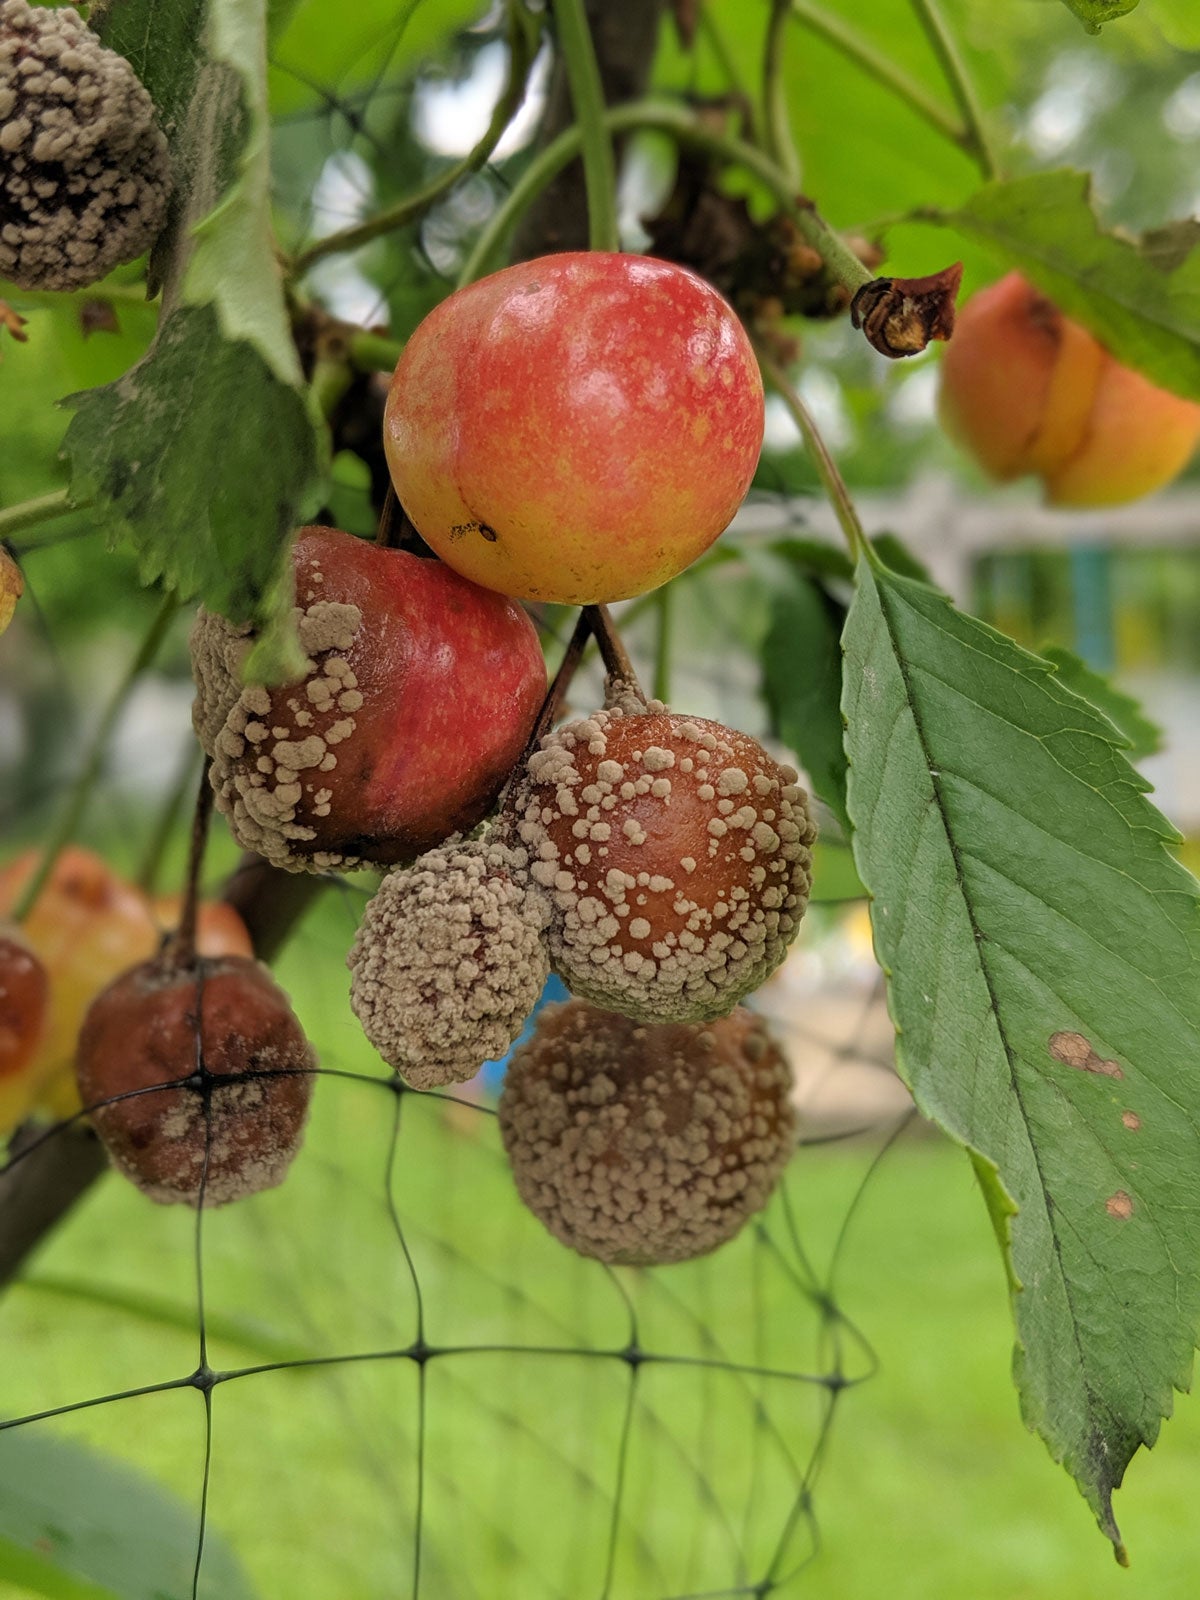 ¿Qué causa que la fruta se pudra en los árboles?